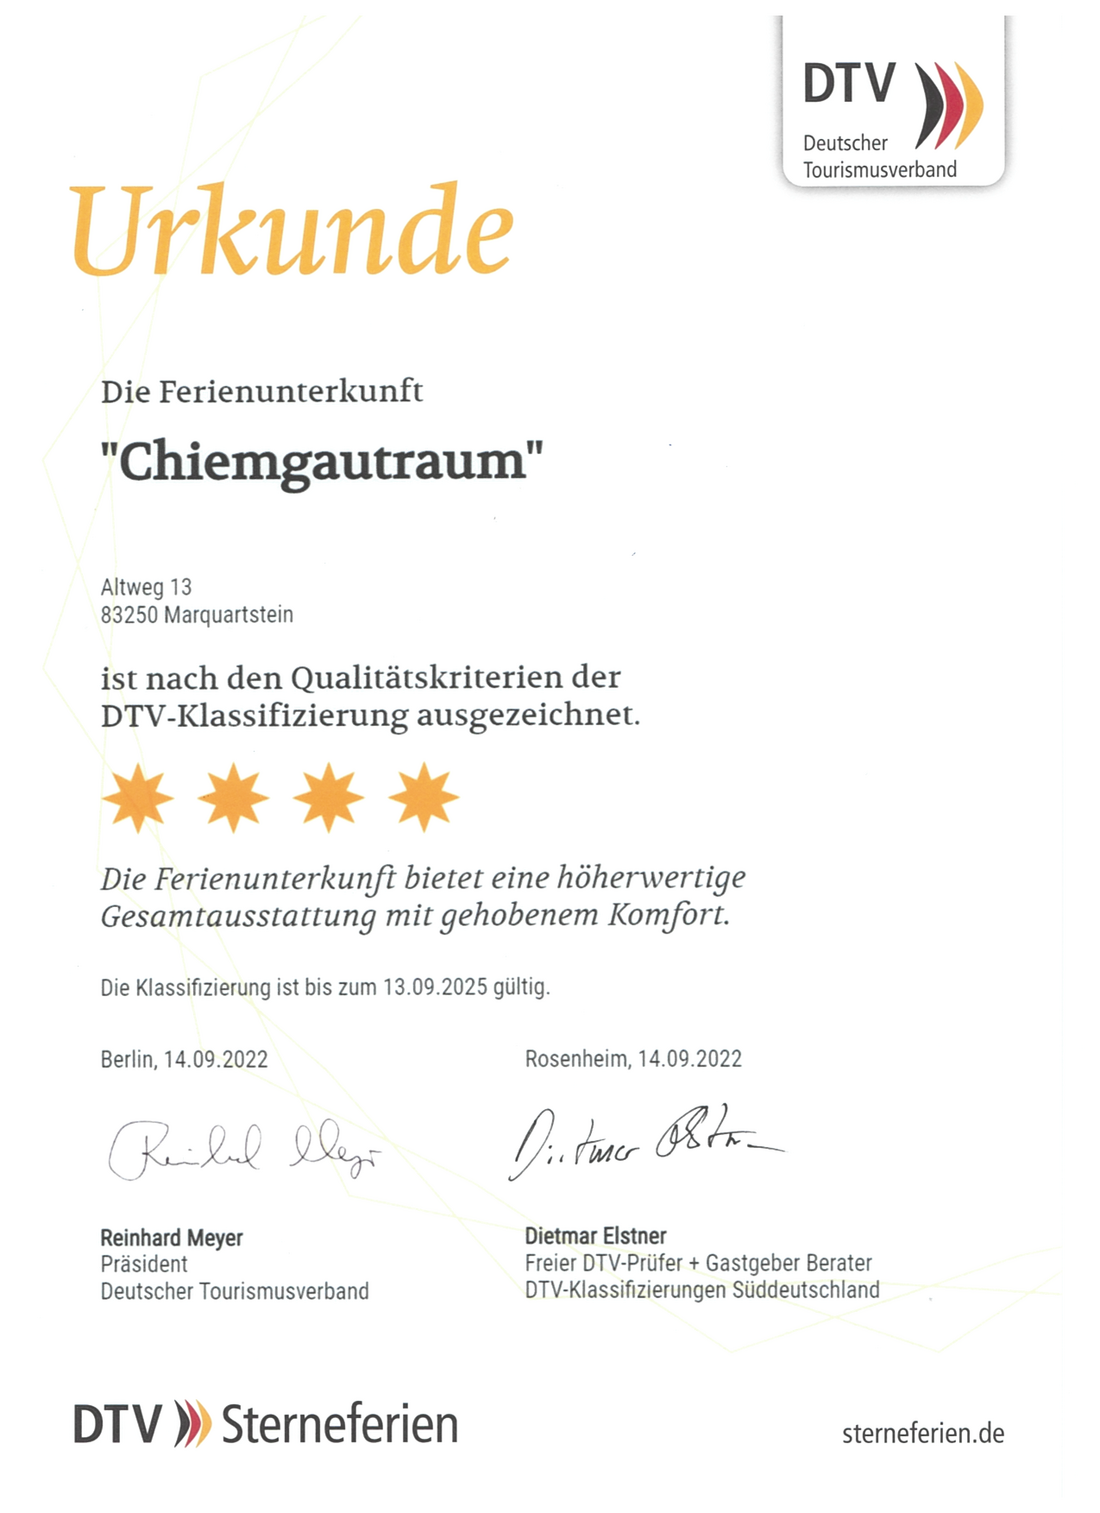 4-Sterne-Zertifizierung Deutscher Tourismusverband (DTV)